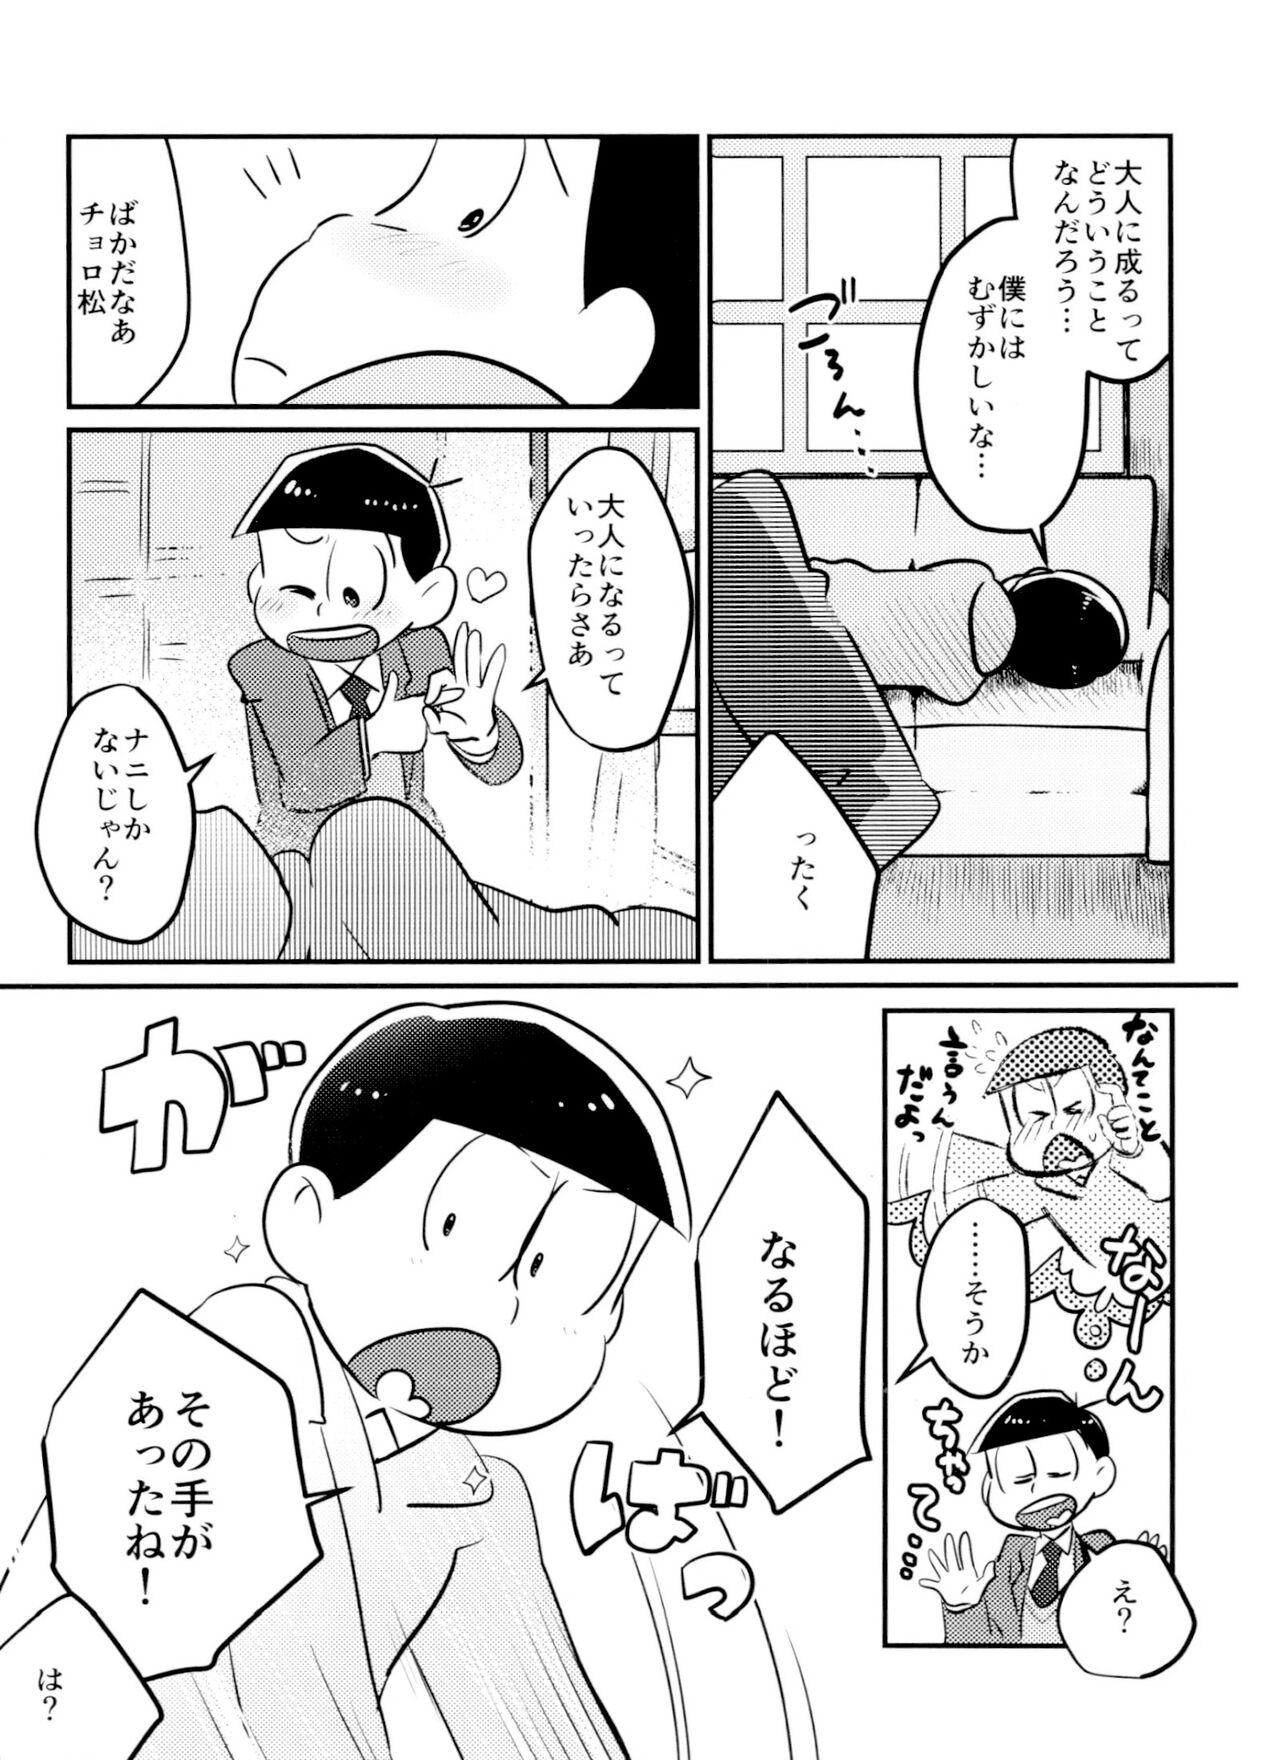 Vergon Kimi wa itsu kara otonana no!? - Osomatsu-san Cousin - Page 6